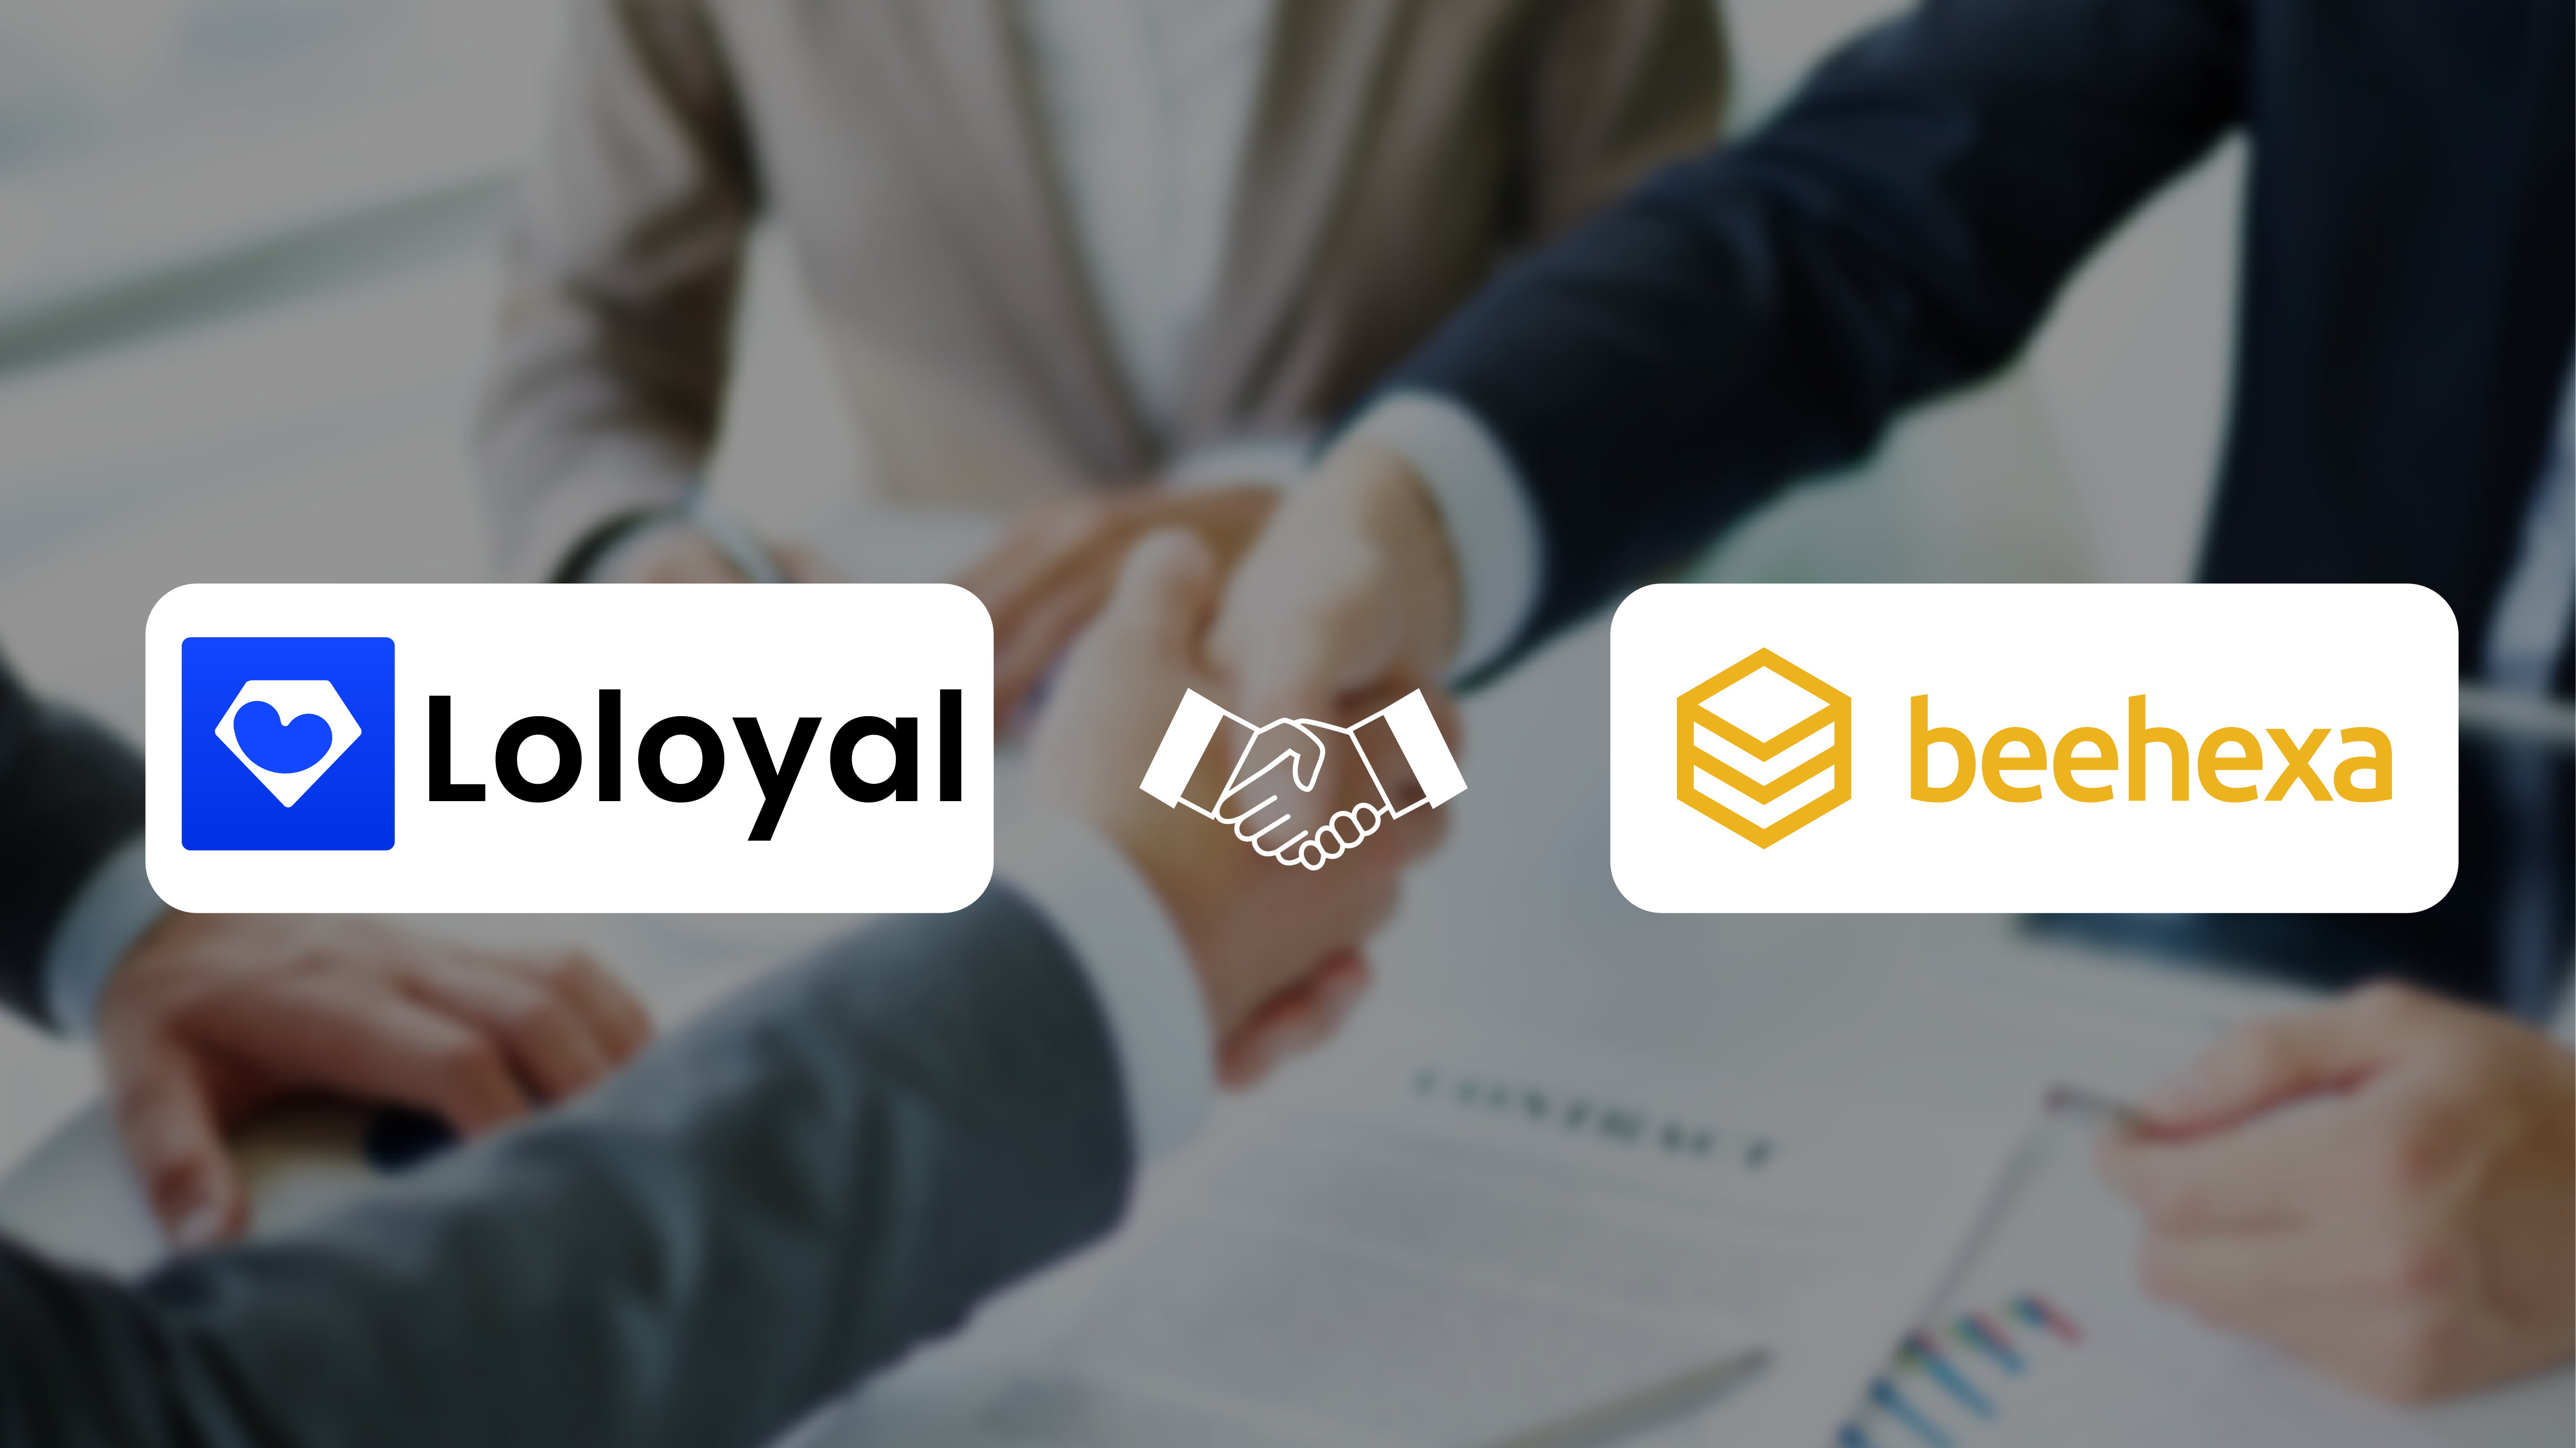 Loloyal And Beehexa Partnership